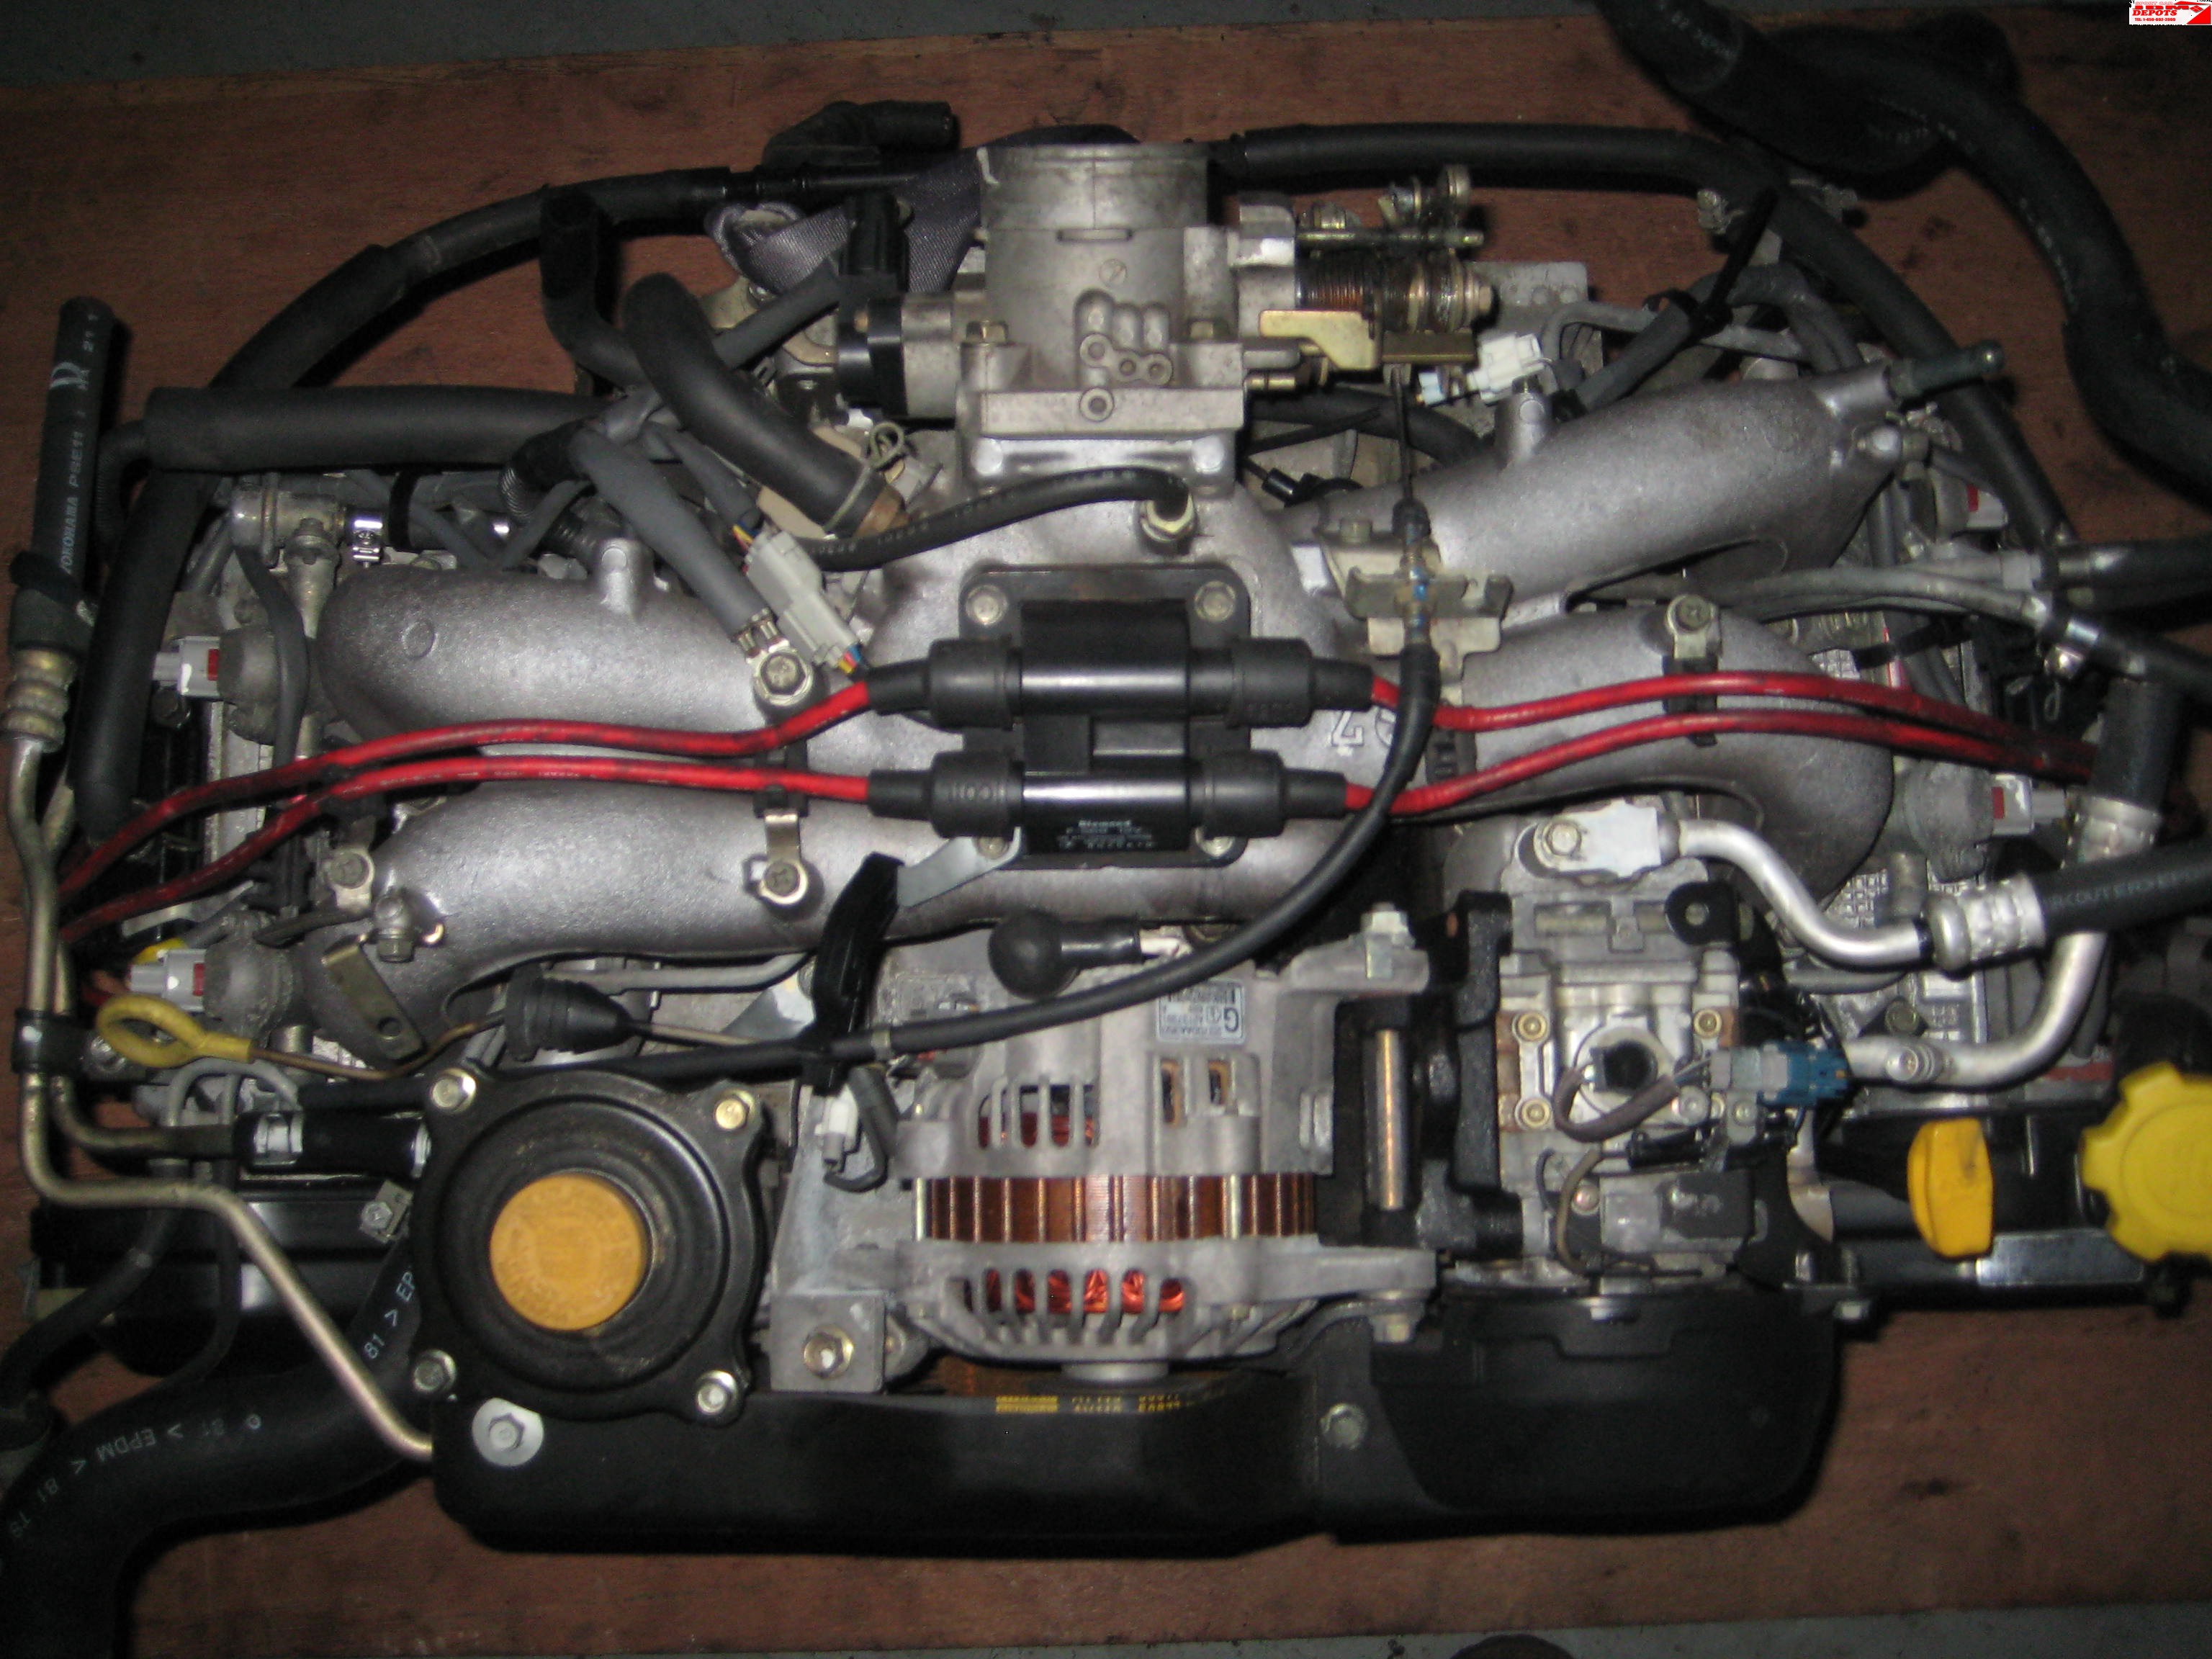 1996 1997 1998 JDM SUBARU IMPREZA FORESTER LEGACY DOHC EJ25D ENGINE JDM SUBARU IMPREZA EJ25 2.5L MOTOR ONLY